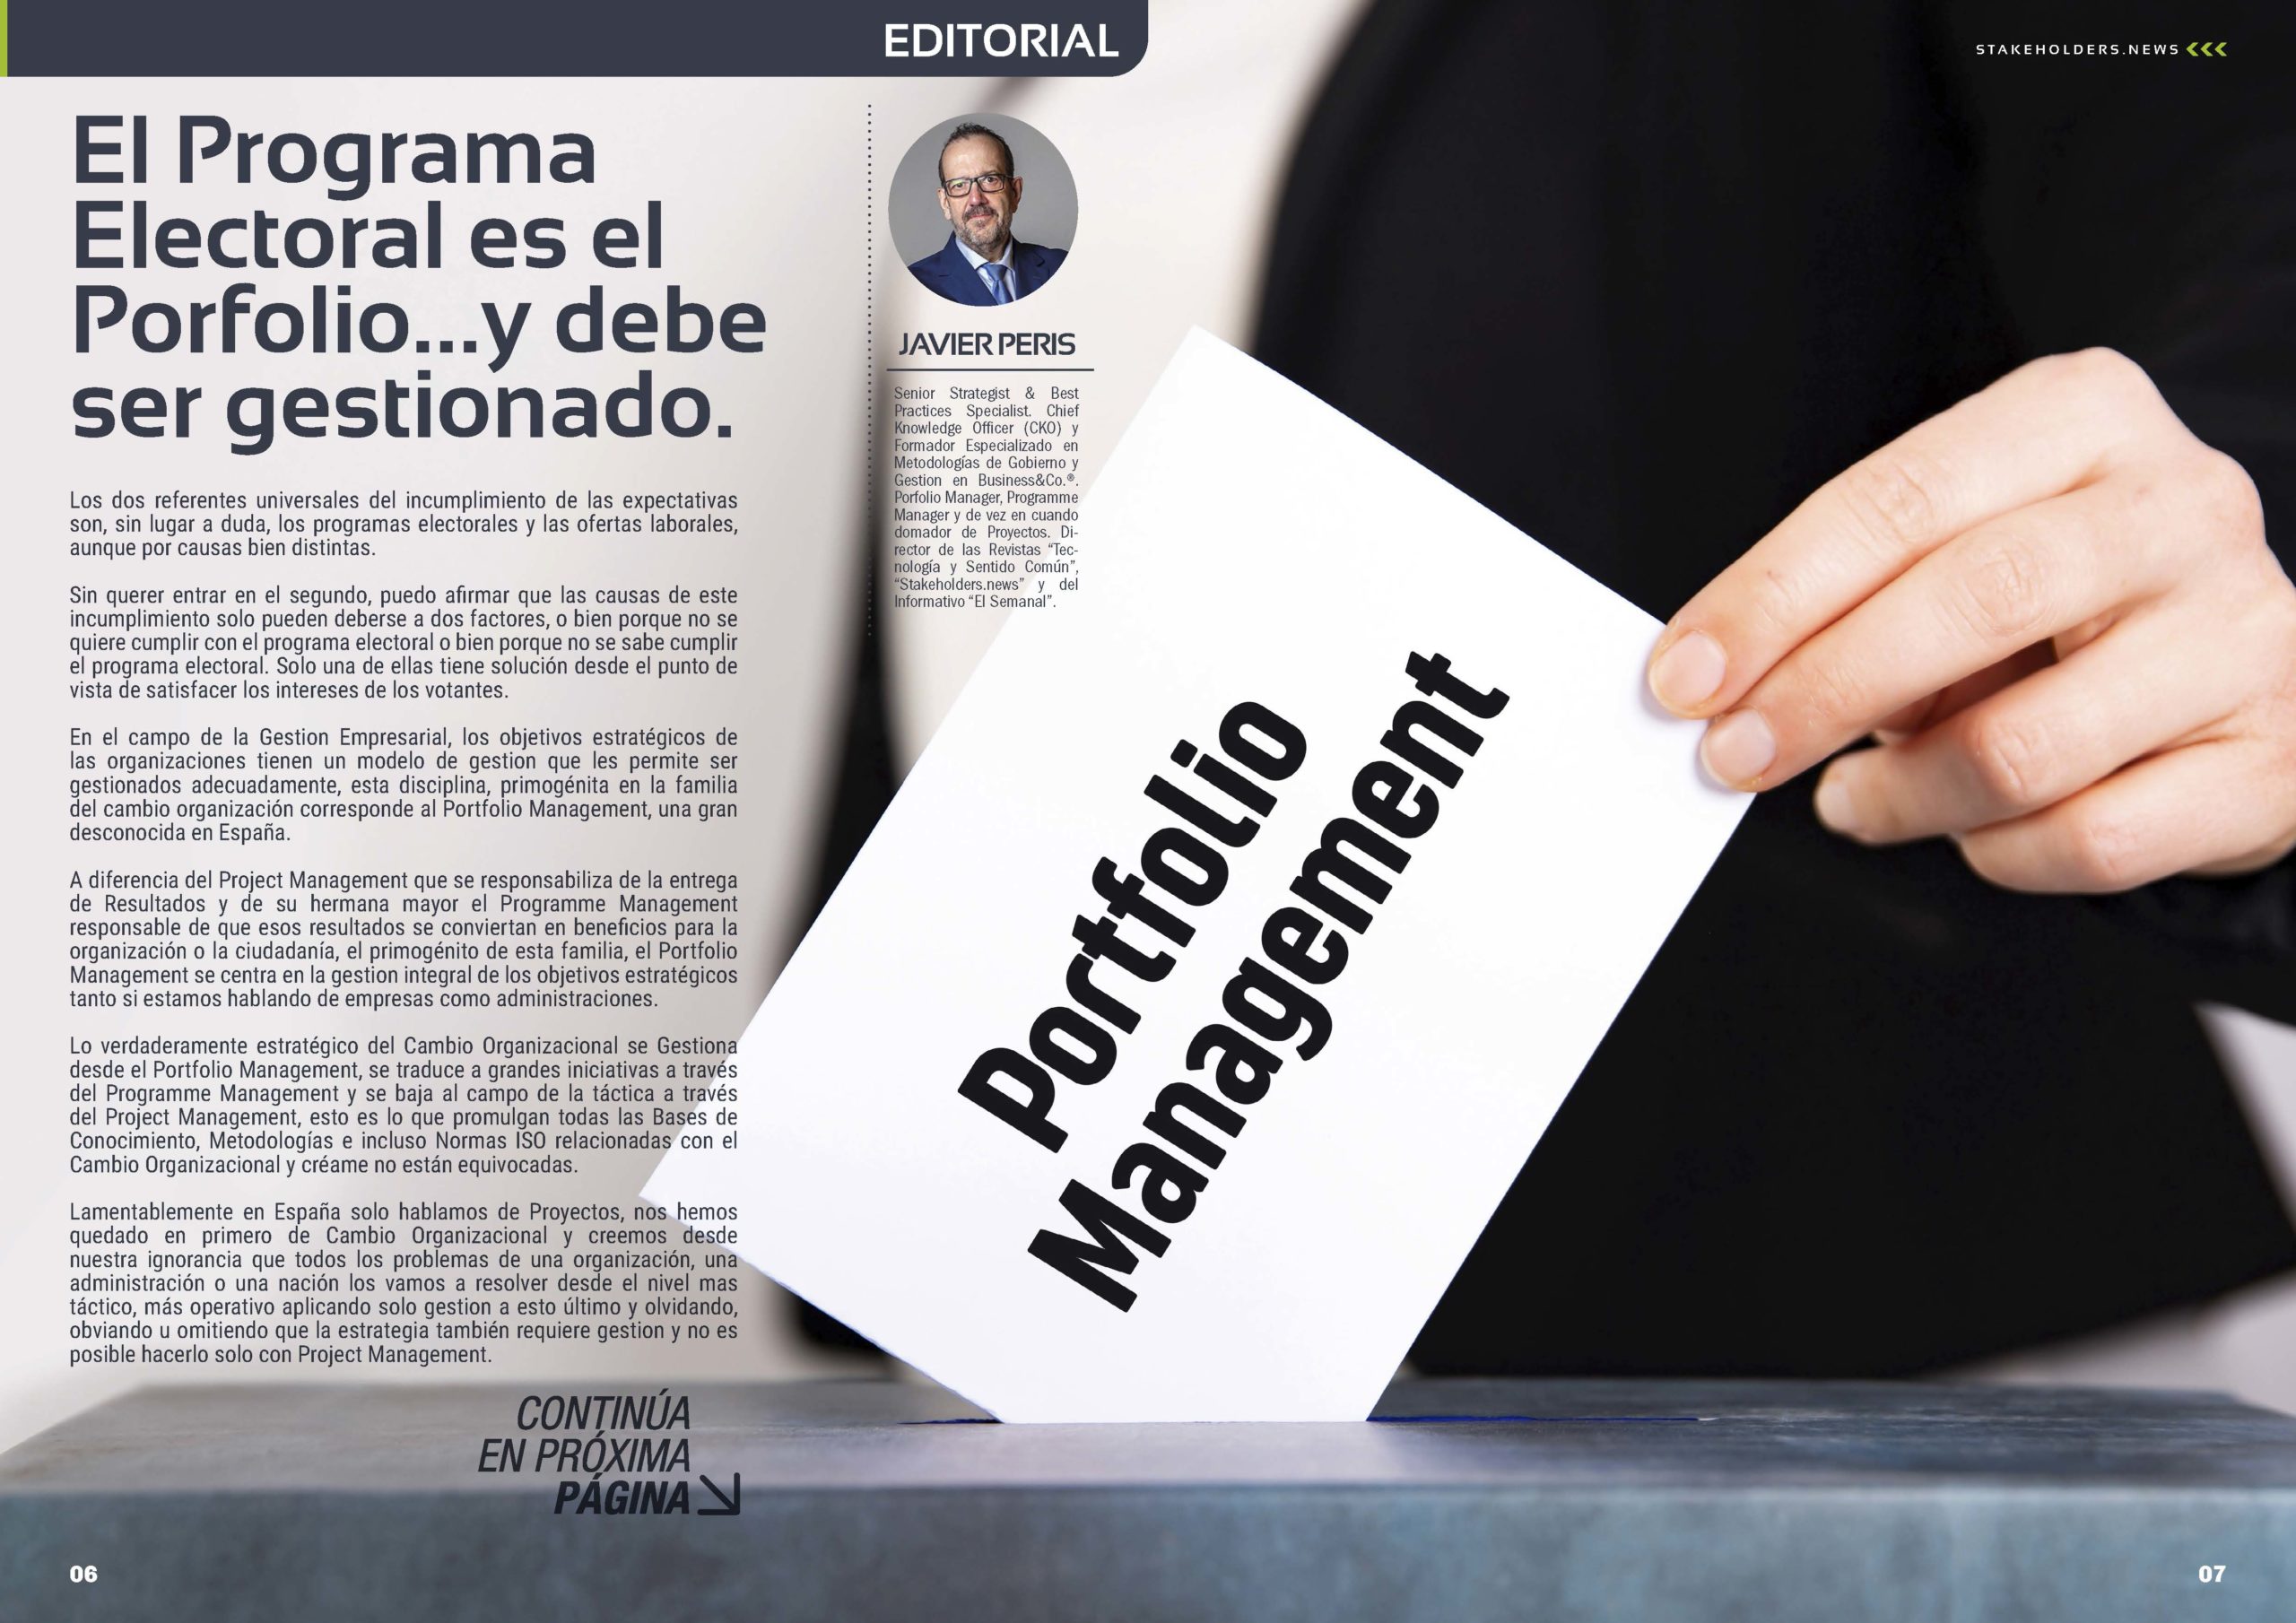 Articulo "El Programa Electoral es el Porfolio …y debe ser gestionado." Editorial de Javier Peris en la Revista Stakeholders.news